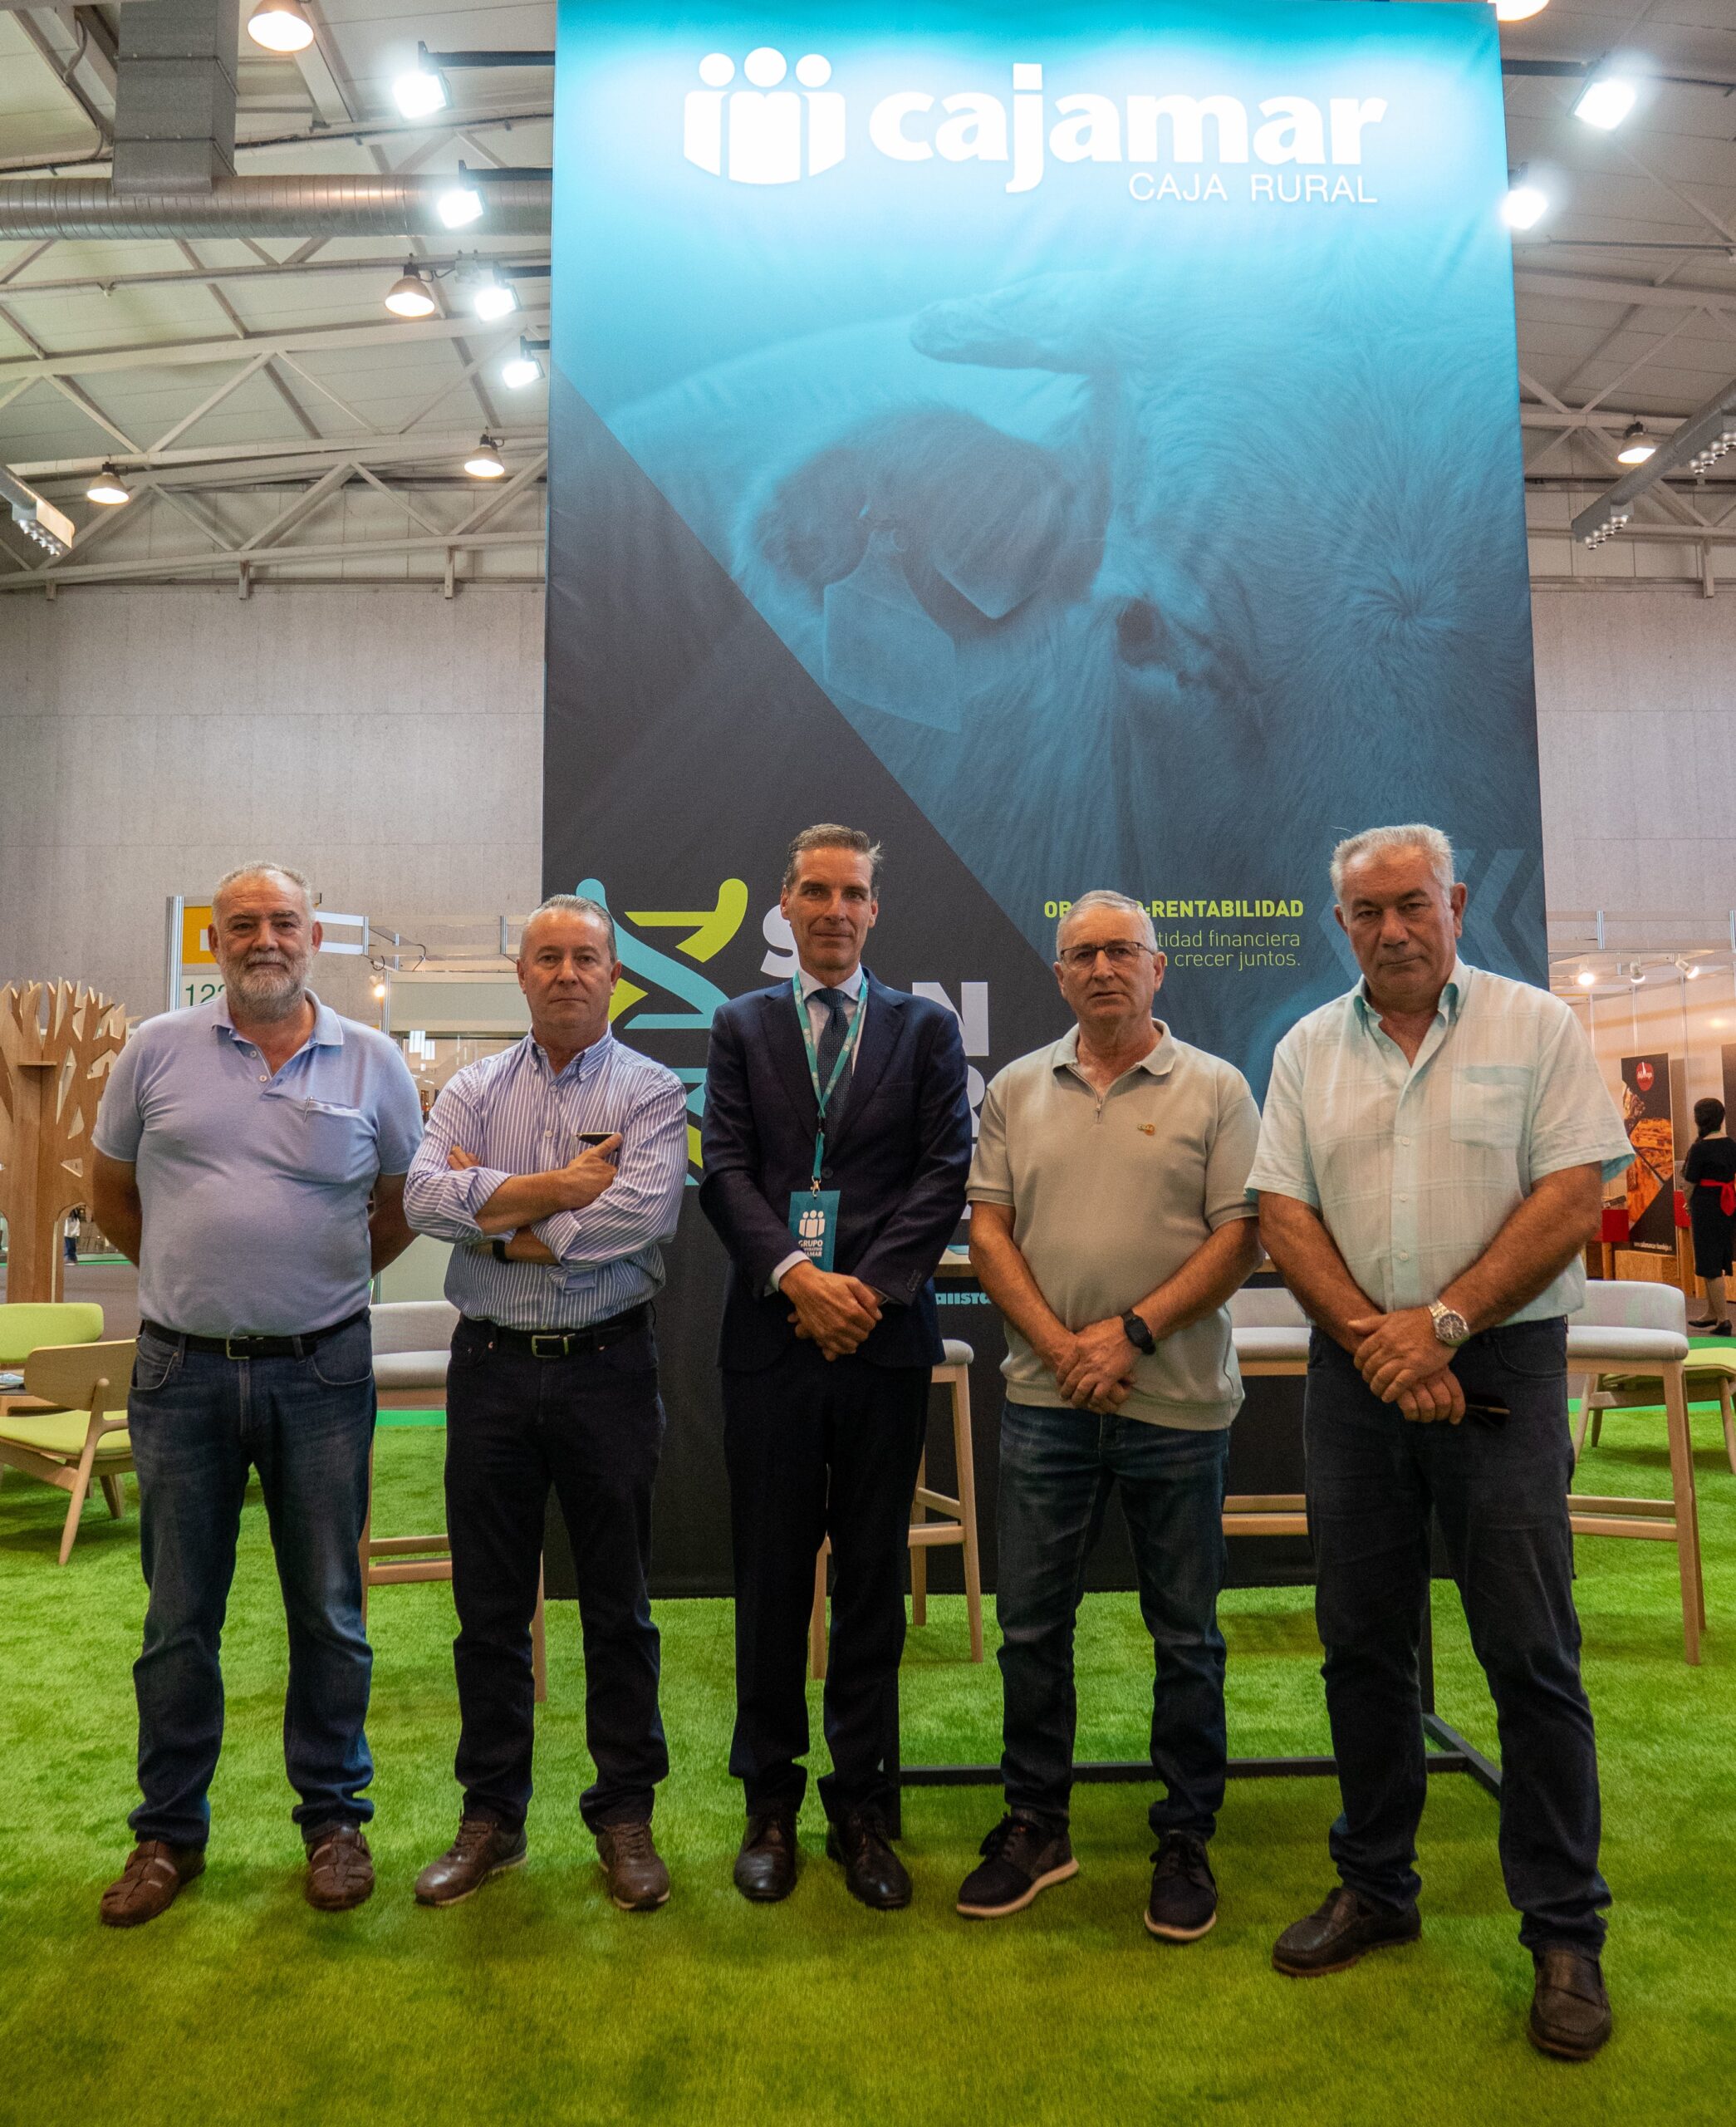 Cajamar y las organizaciones agrarias de Castilla y León financiarán inversiones del sector agrícola